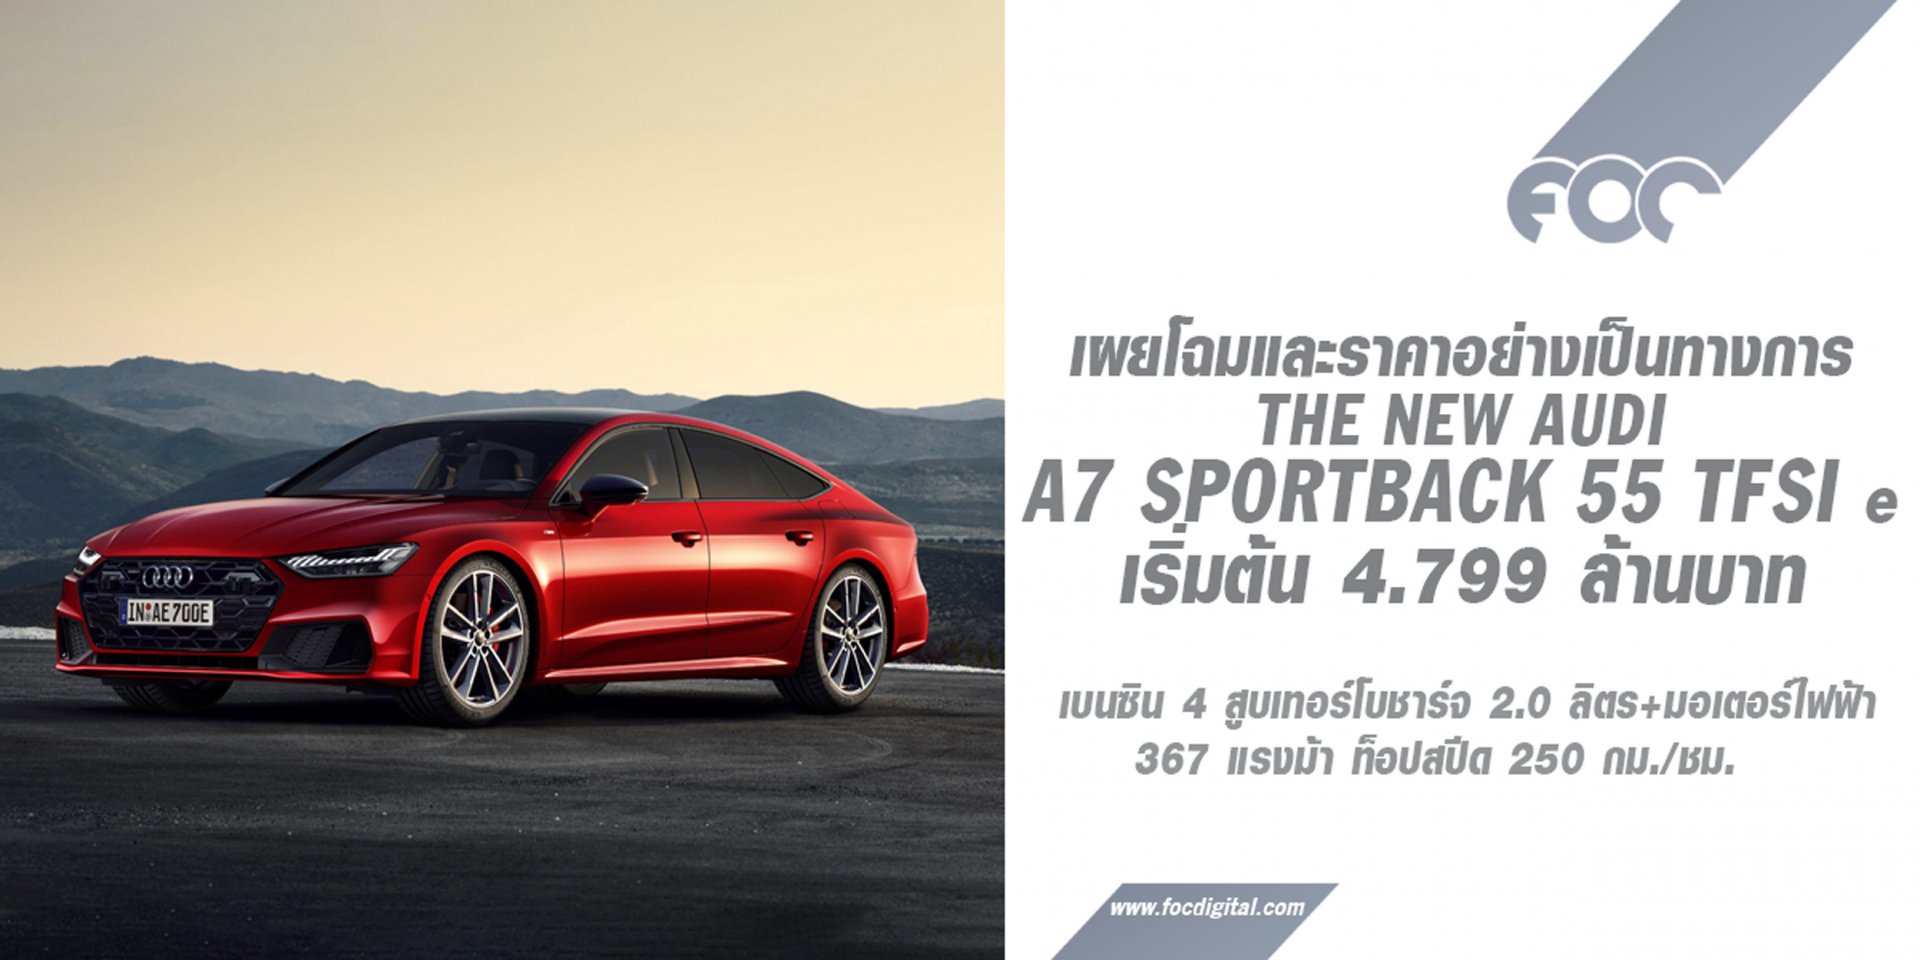 อาวดี้เผยโฉมซีดานปลั๊กอินไฮบริดใหม่! The New Audi A7 Sportback 55 TFSI e เริ่มต้น 4.799 ล้านบาท